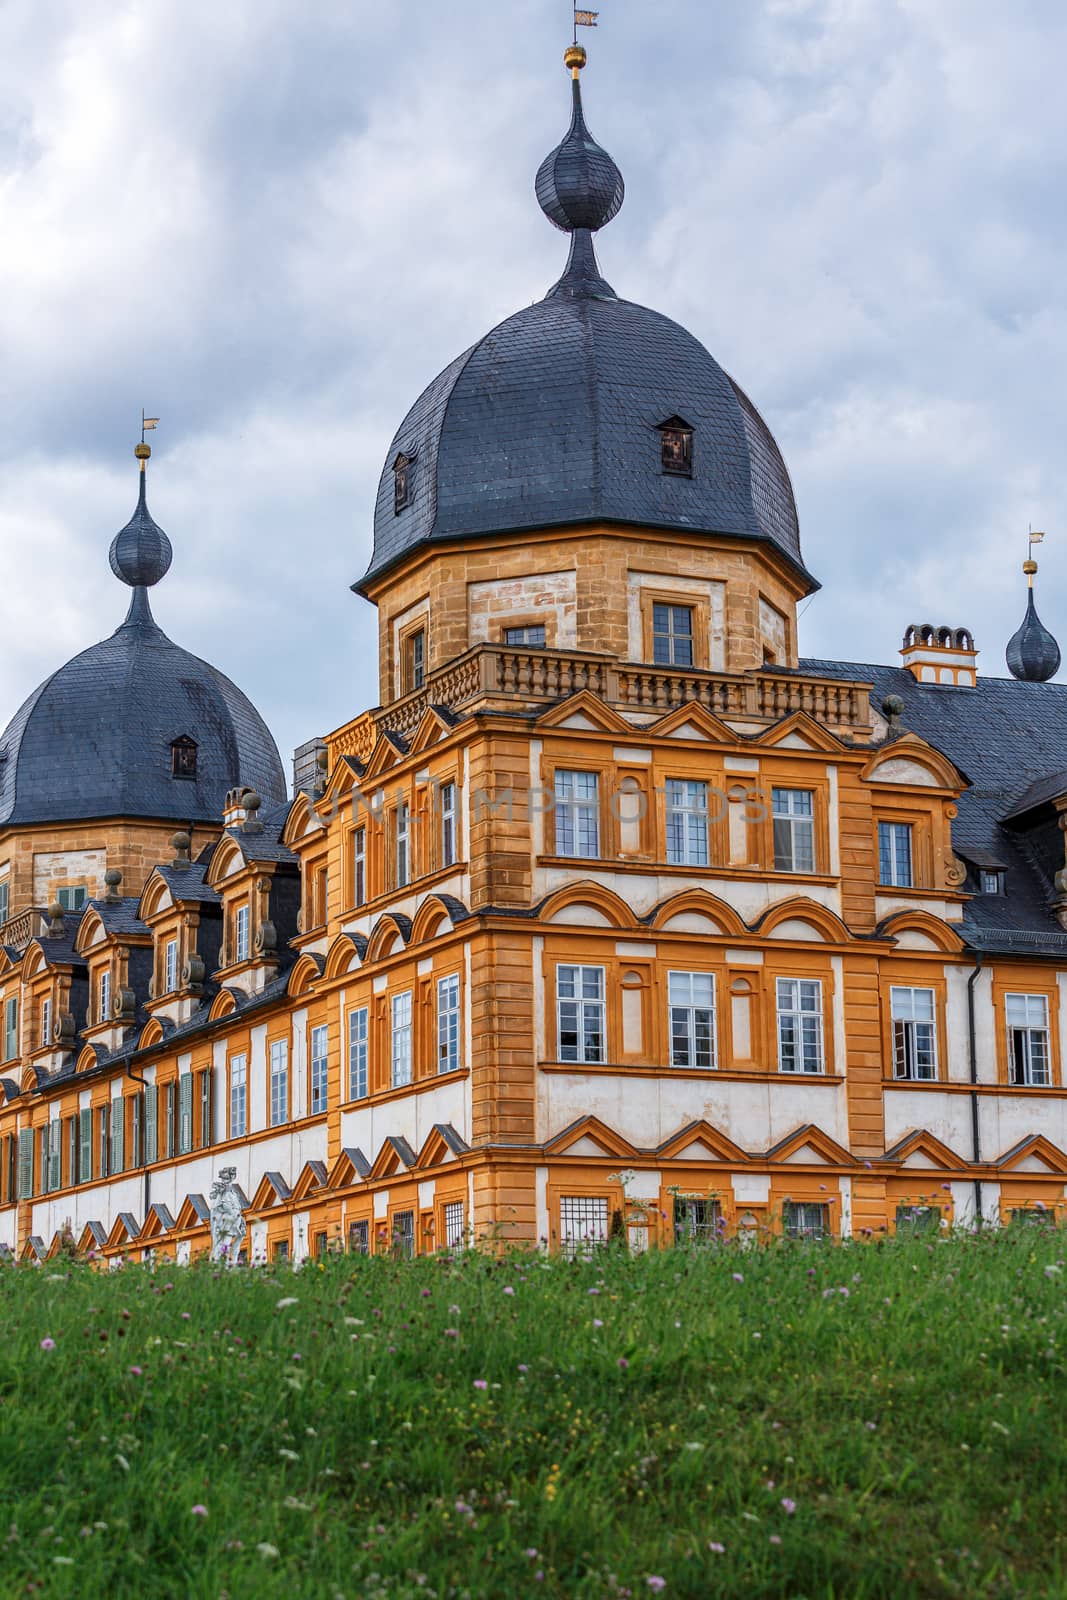 Seehof Palace and Park, Bavaria, Germany. by seka33